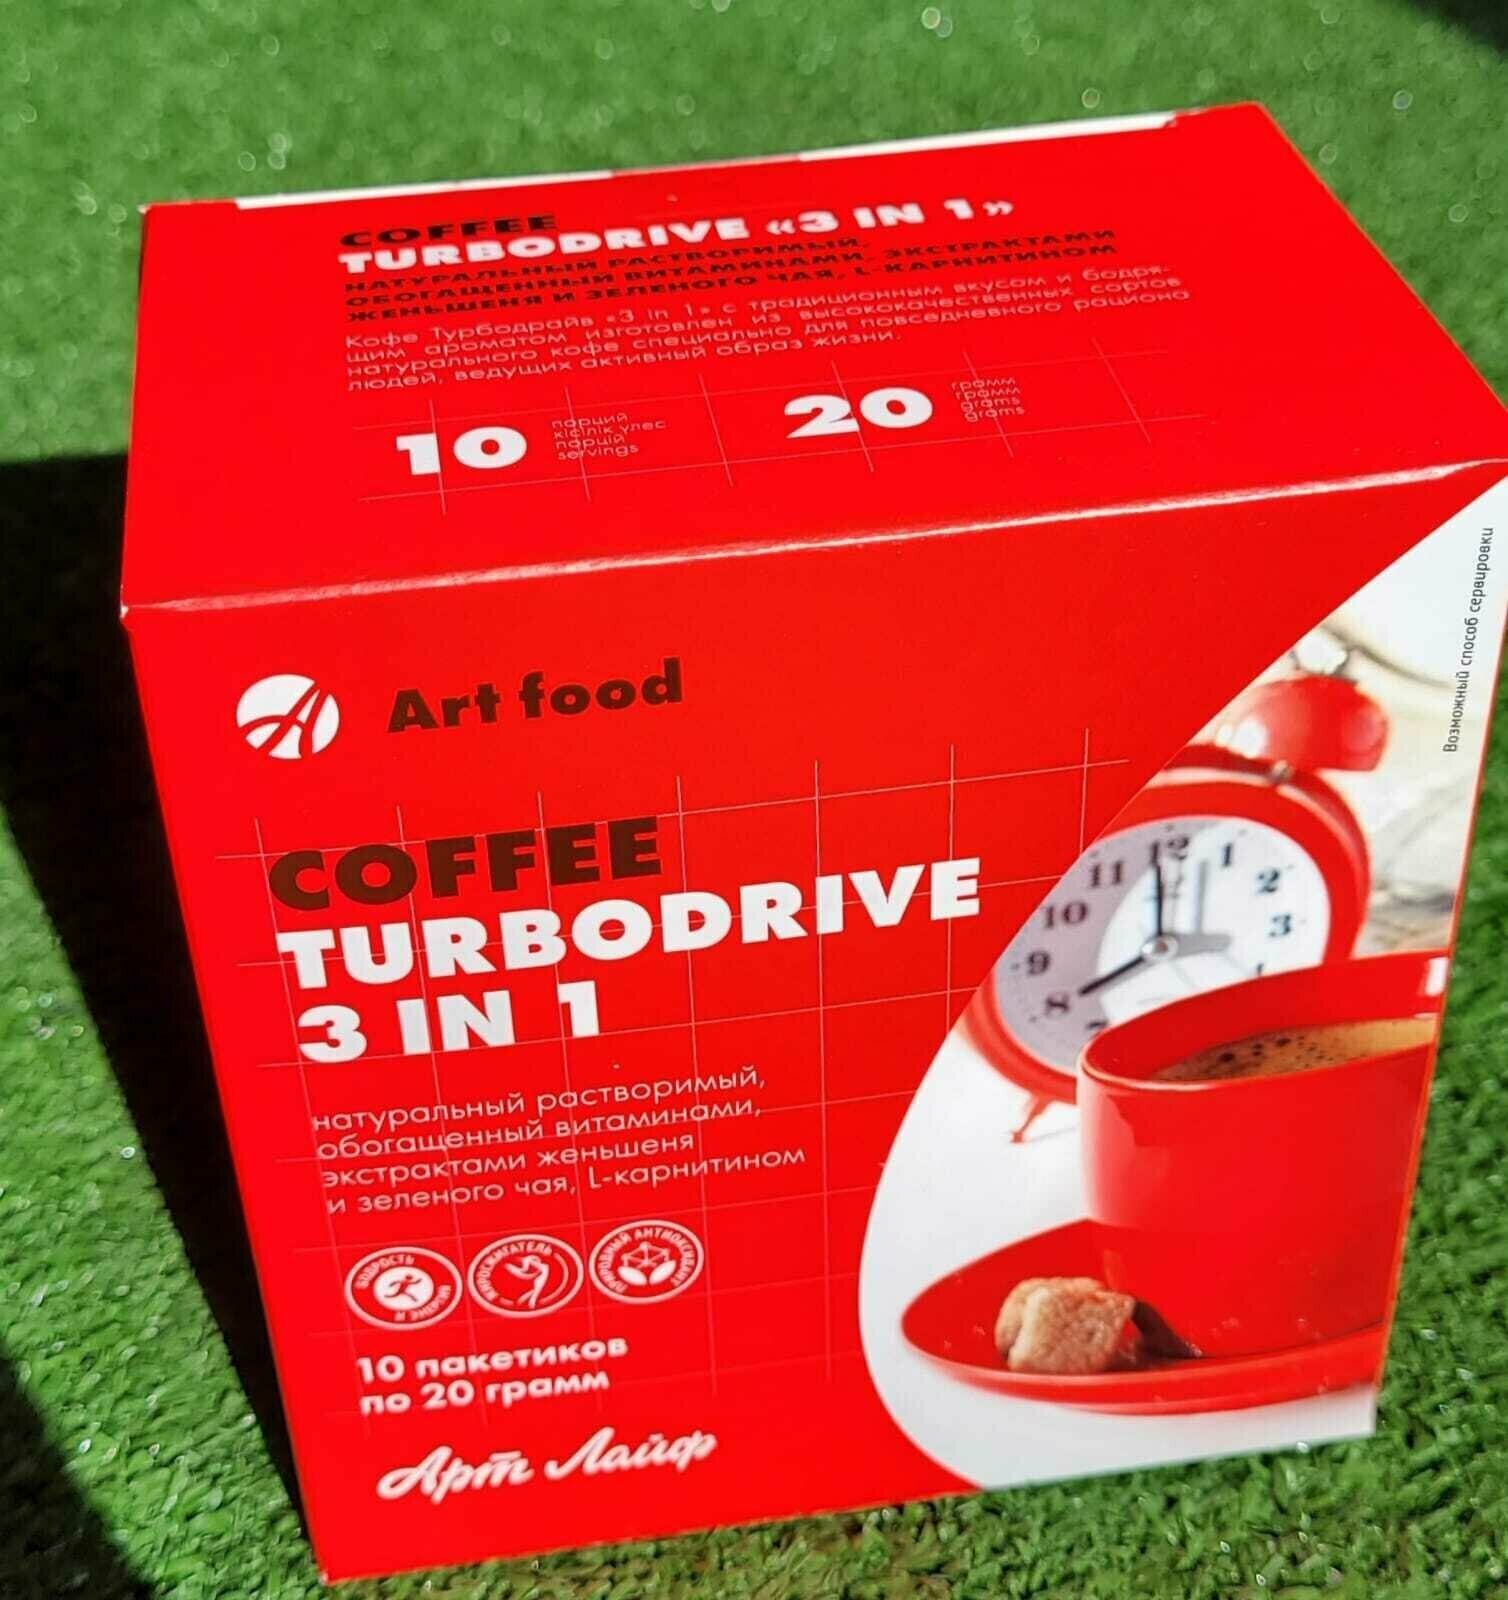 Кофе Арт Лайф Turbodrive 3 in 1 ("Турбодрайв") 10 пакетиков по 20 г Обогащен витаминами L-карнитином экстрактами женьшеня и зеленого чая.